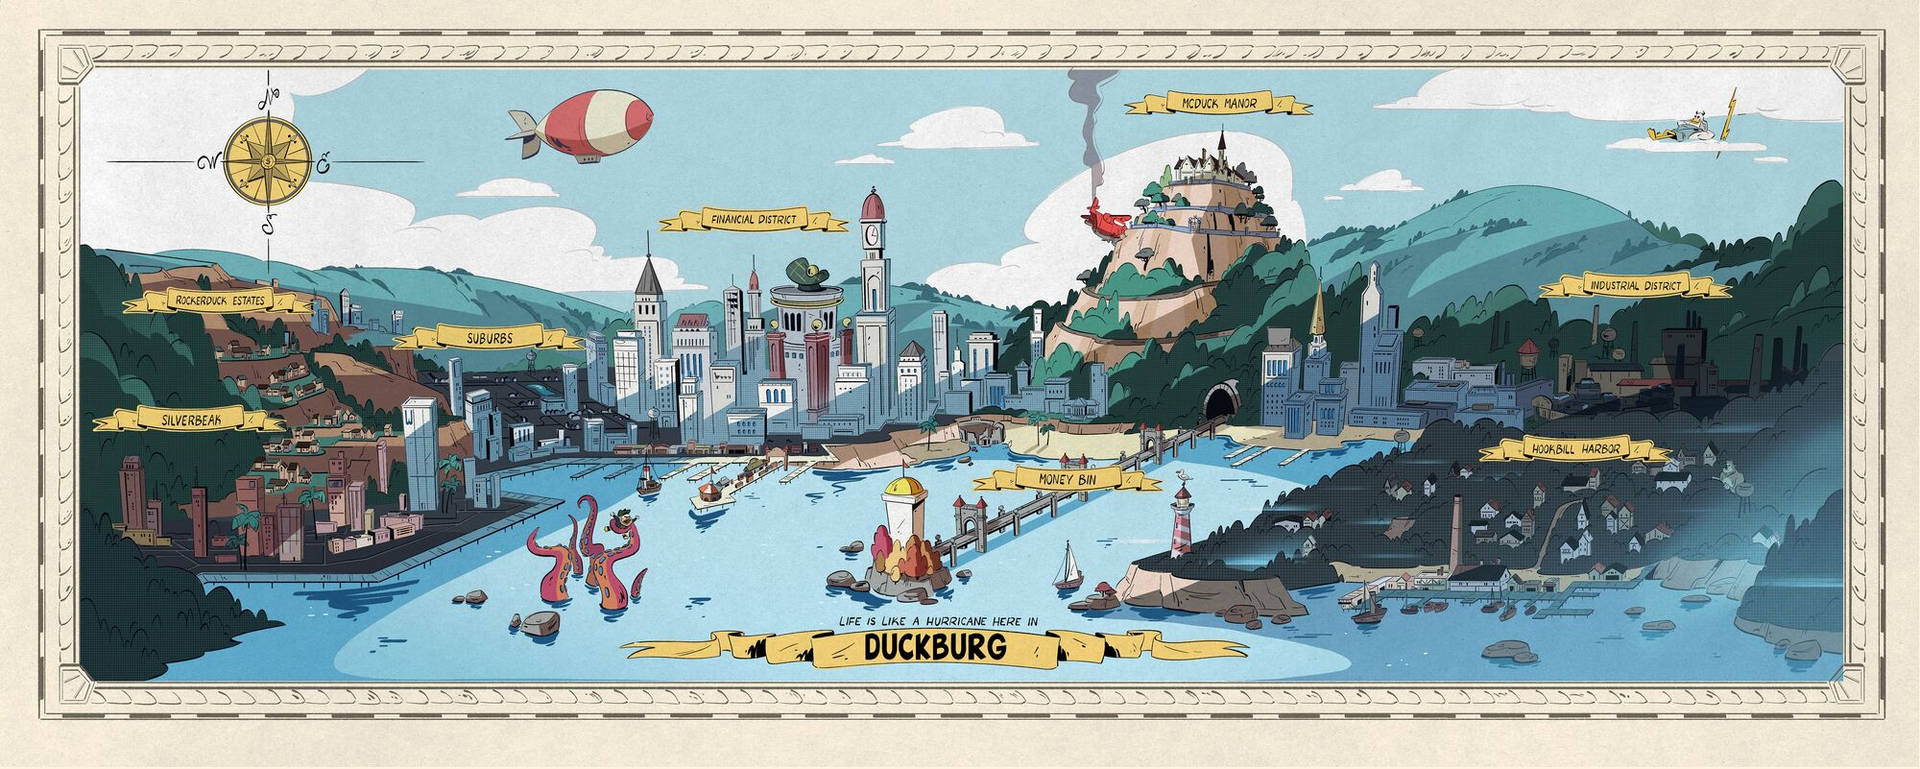 Ducktales Town Wallpaper